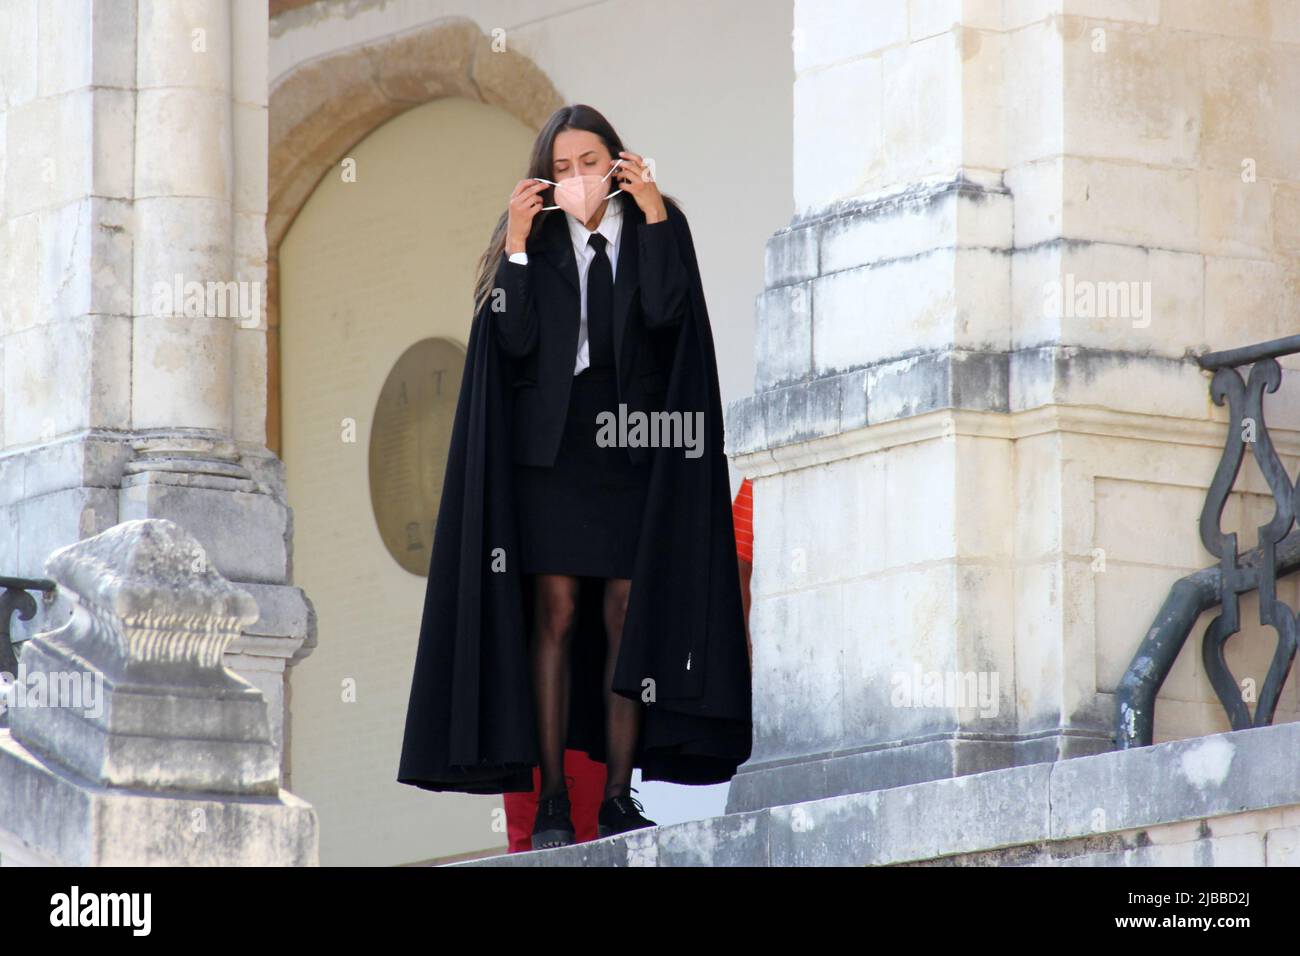 Étudiant en manteau noir traditionnel, portant un masque, sur les marches  du bâtiment historique de l'université, Coimbra, Portugal Photo Stock -  Alamy